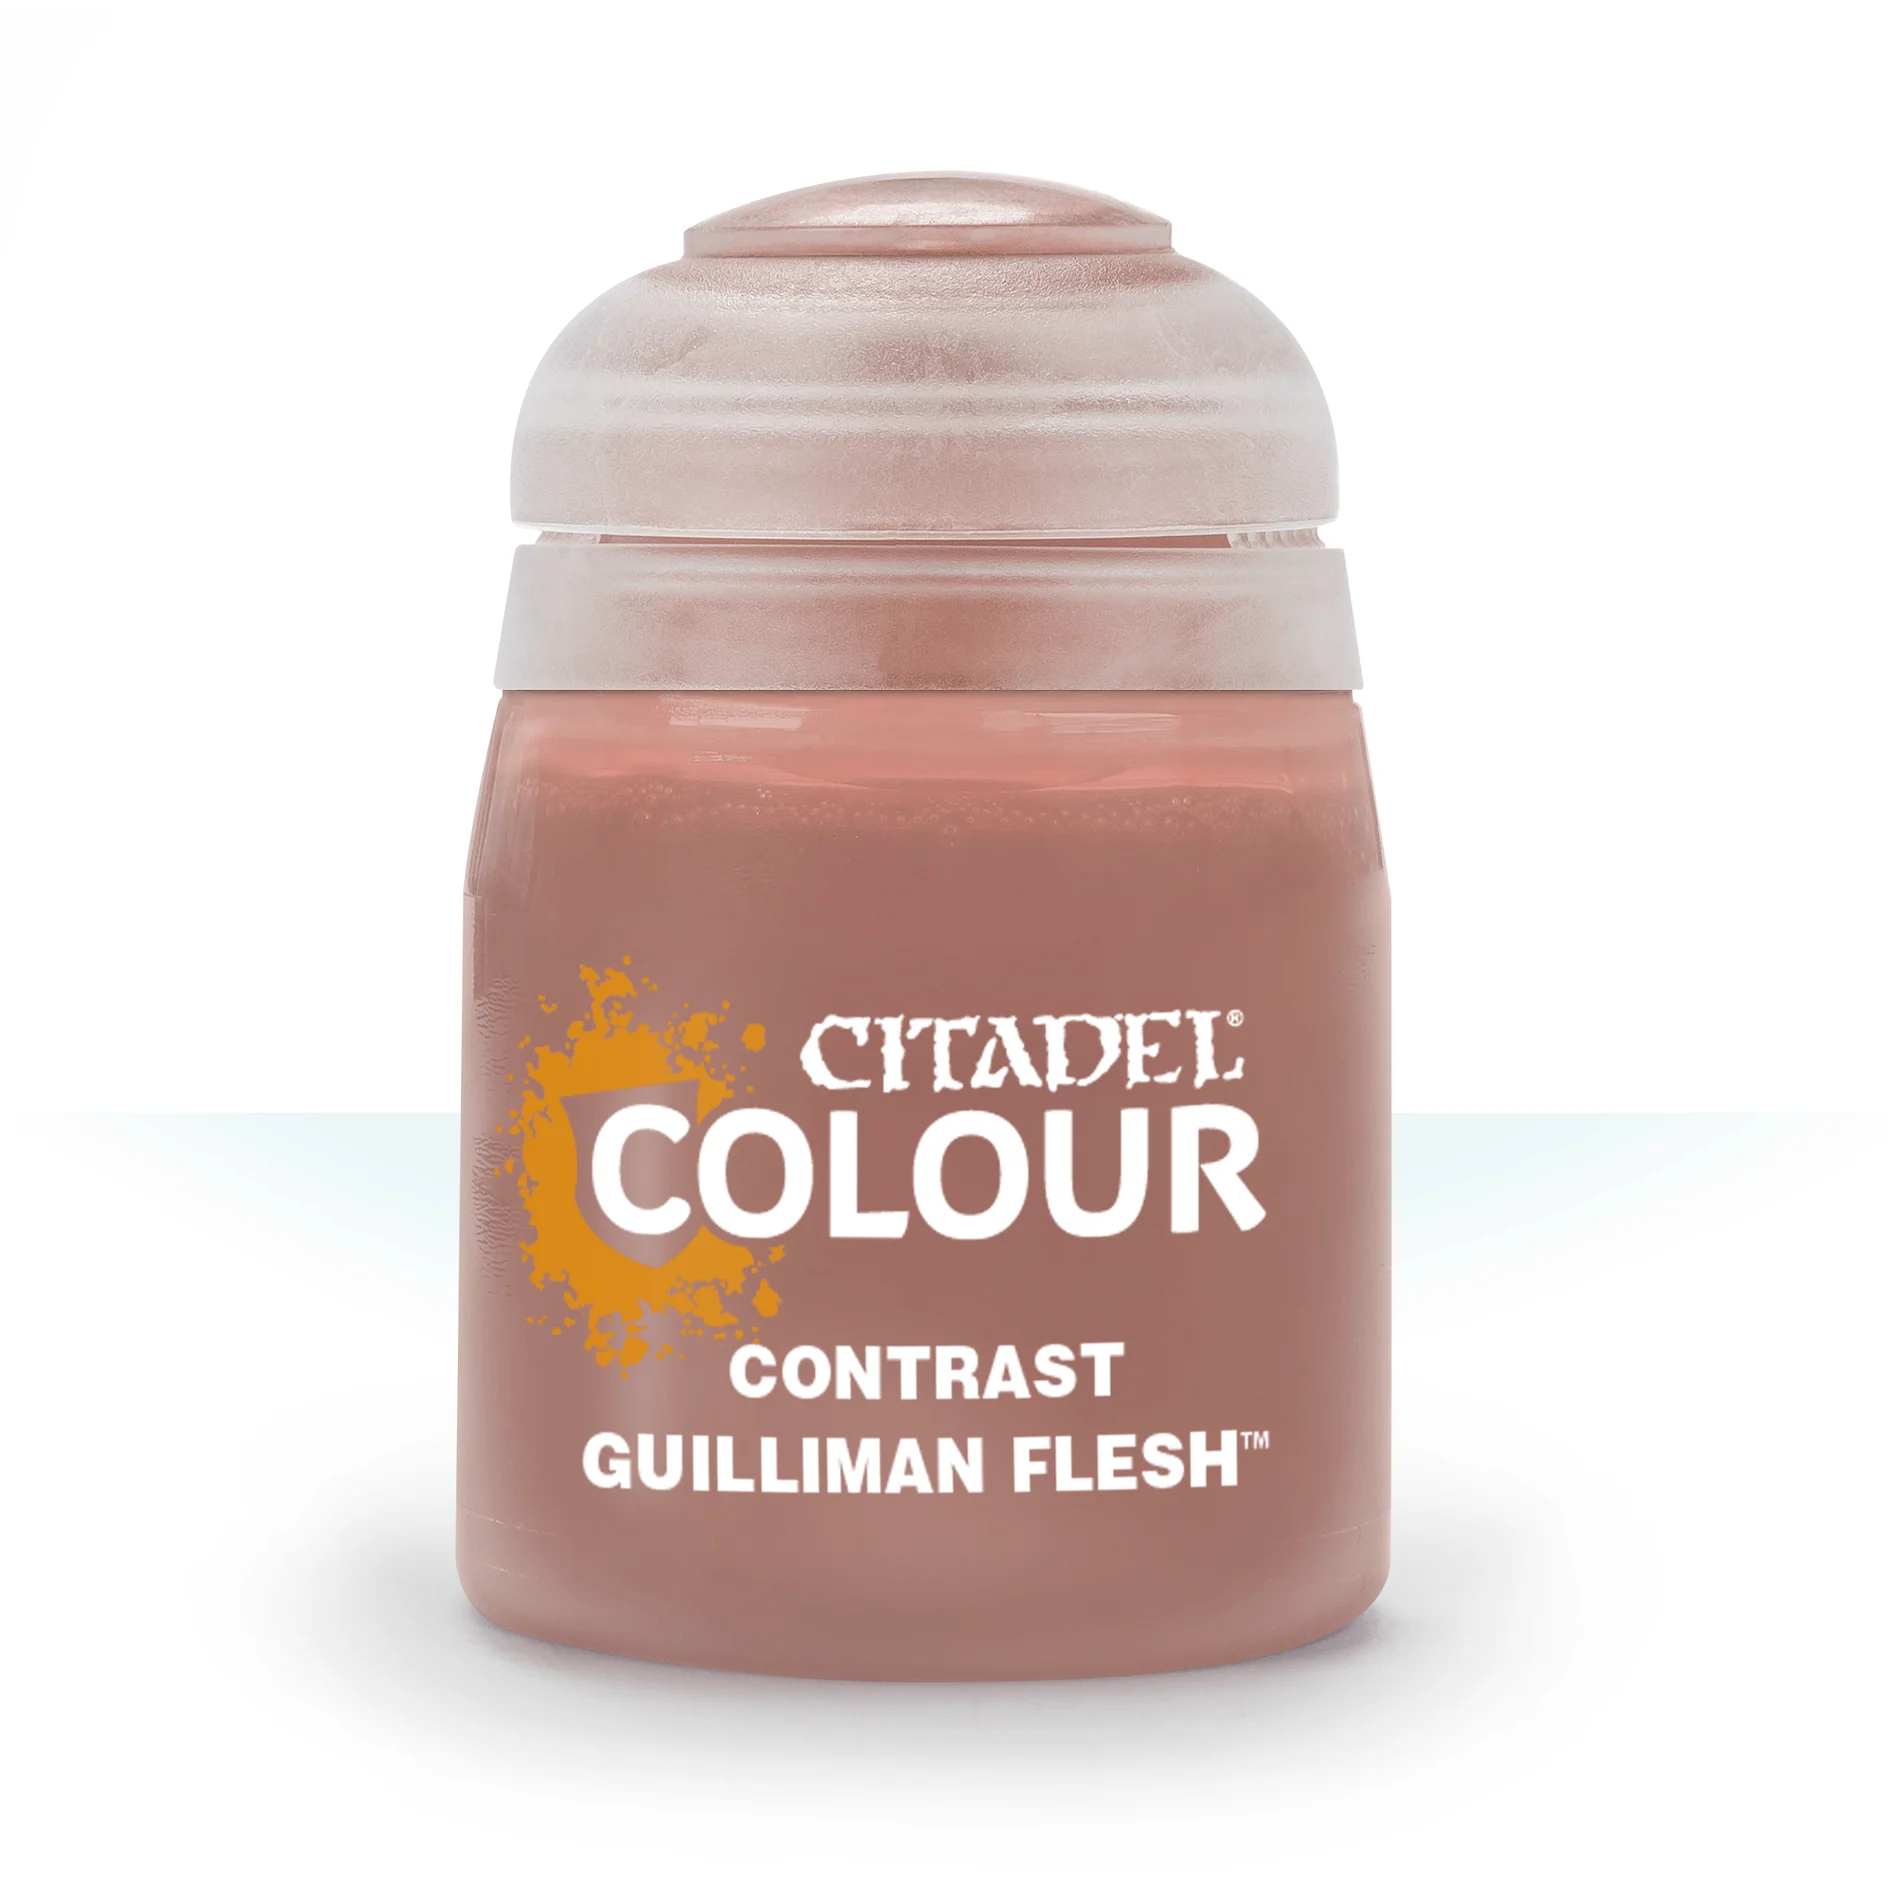 Citadel Colour – Contrast – Guilliman Flesh